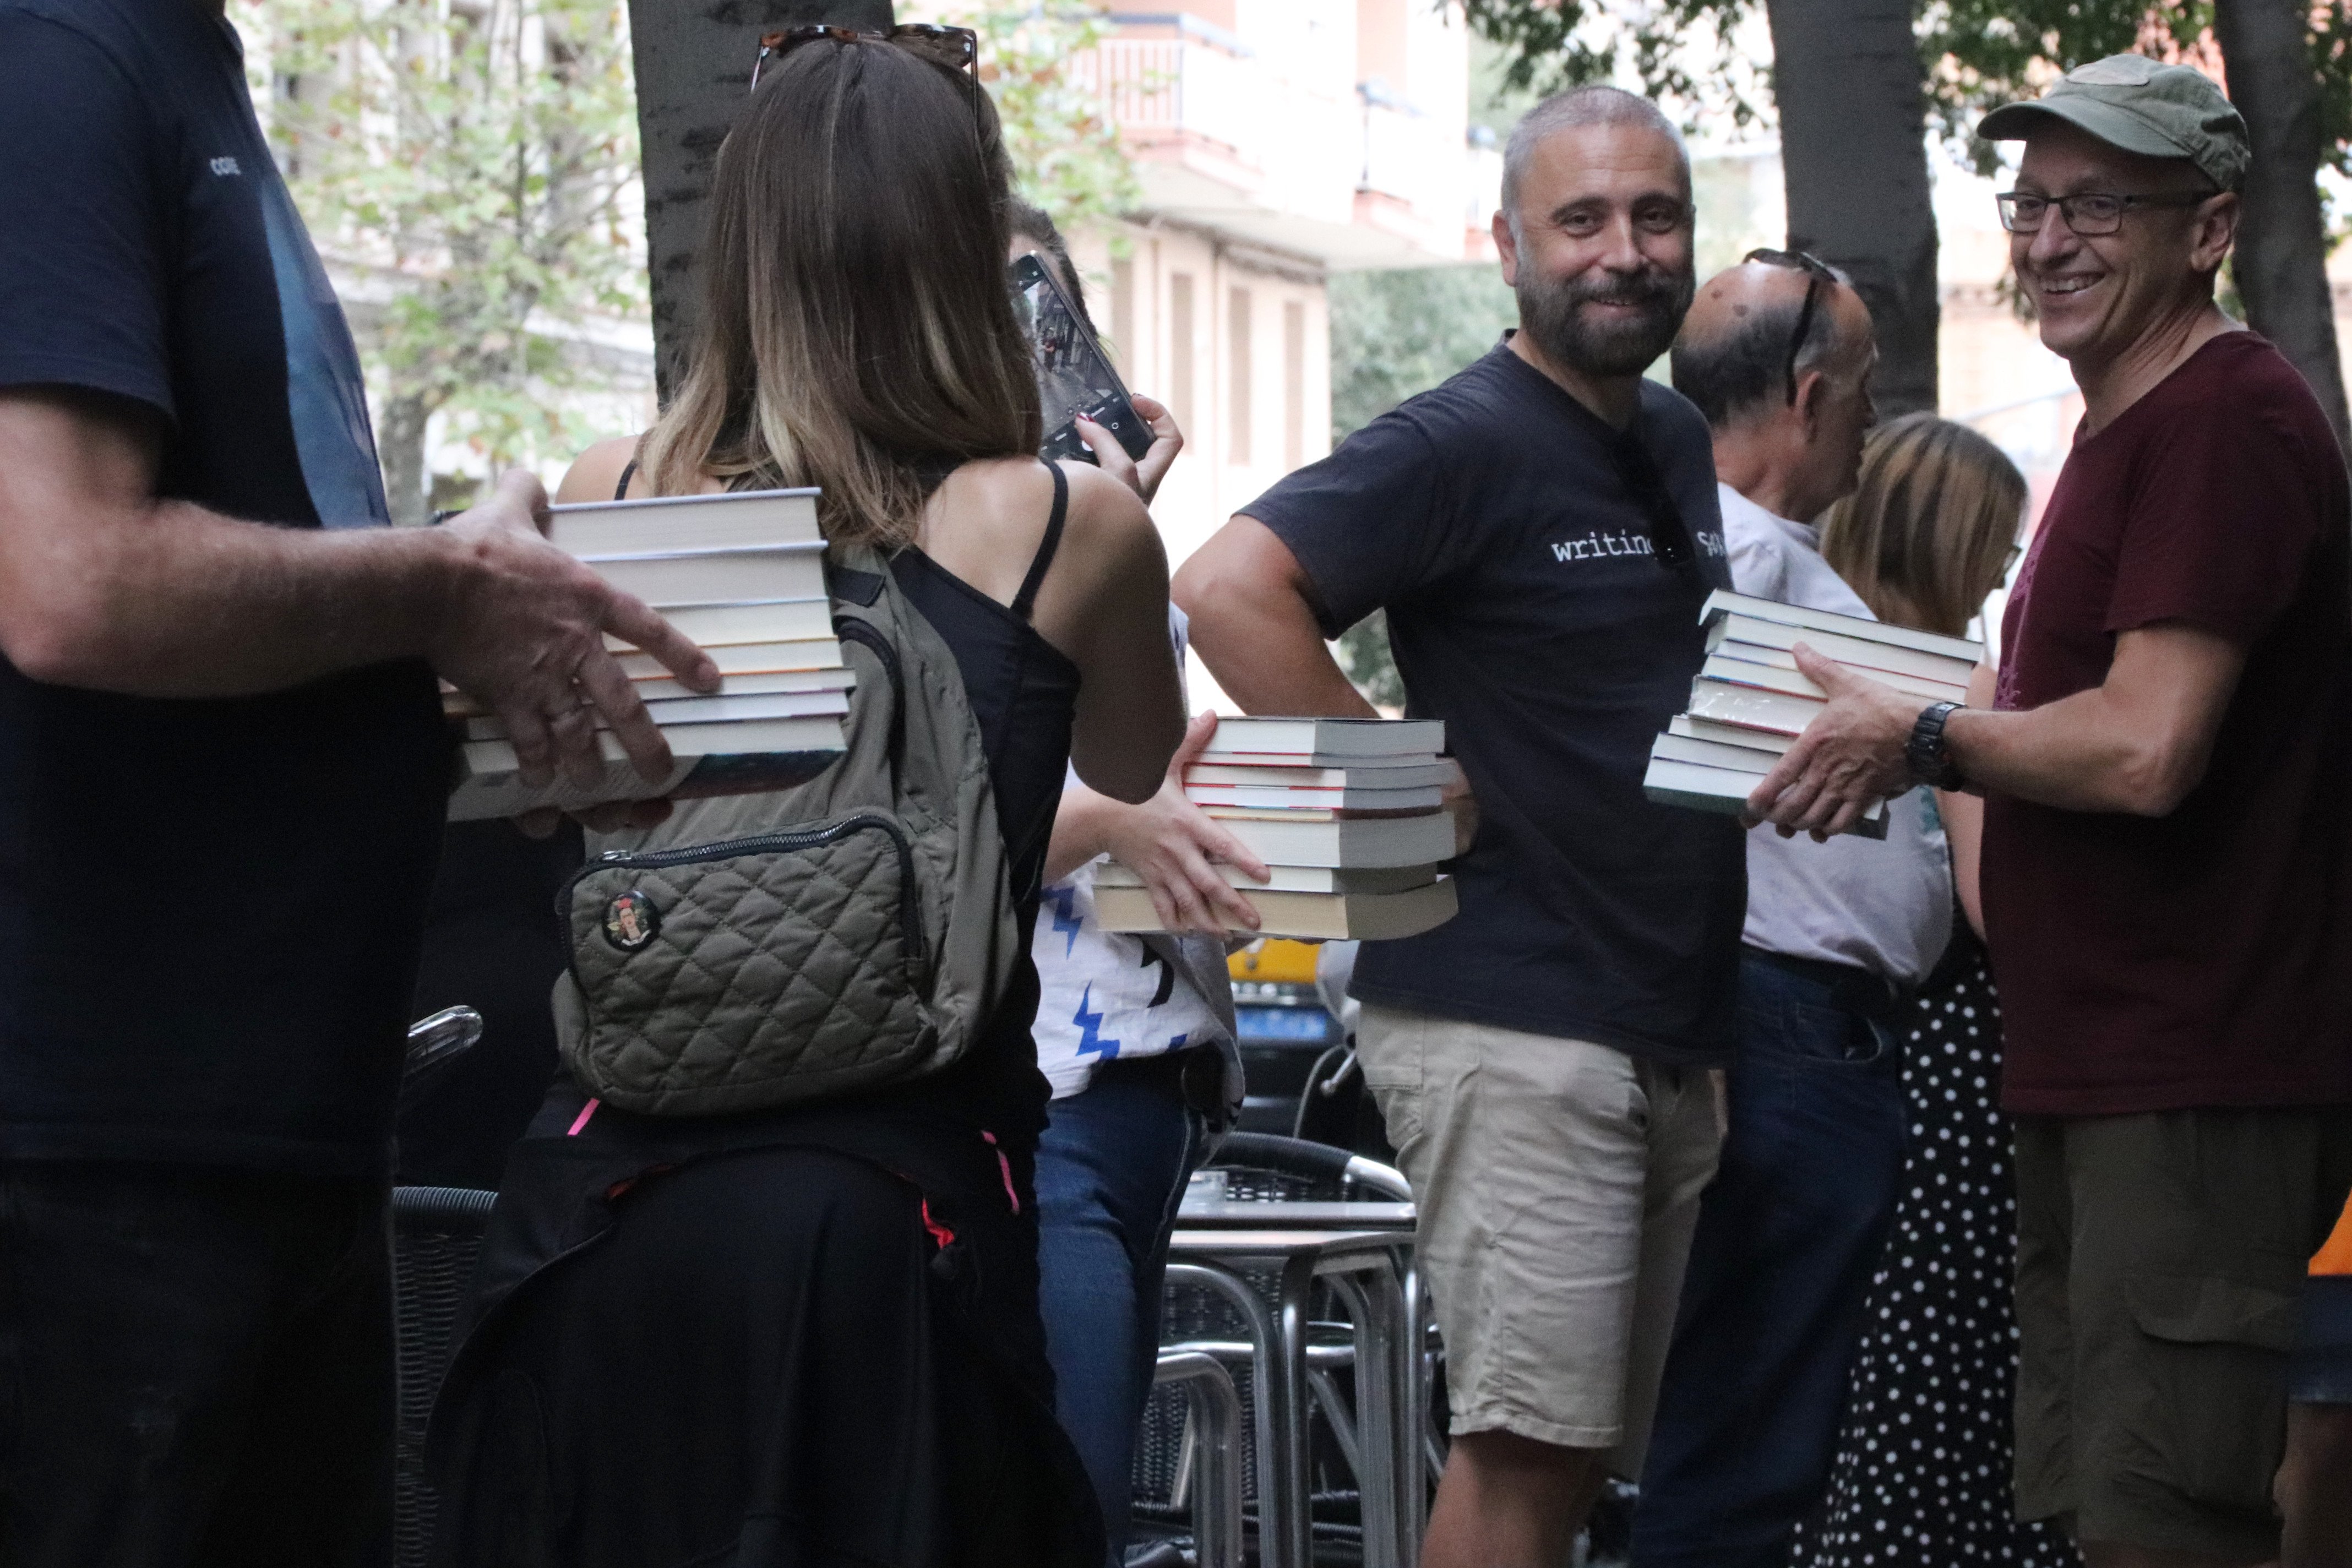 Una cadena humana traslada más de 8.000 libros de la librería Nollegiu del Clot a su nuevo local